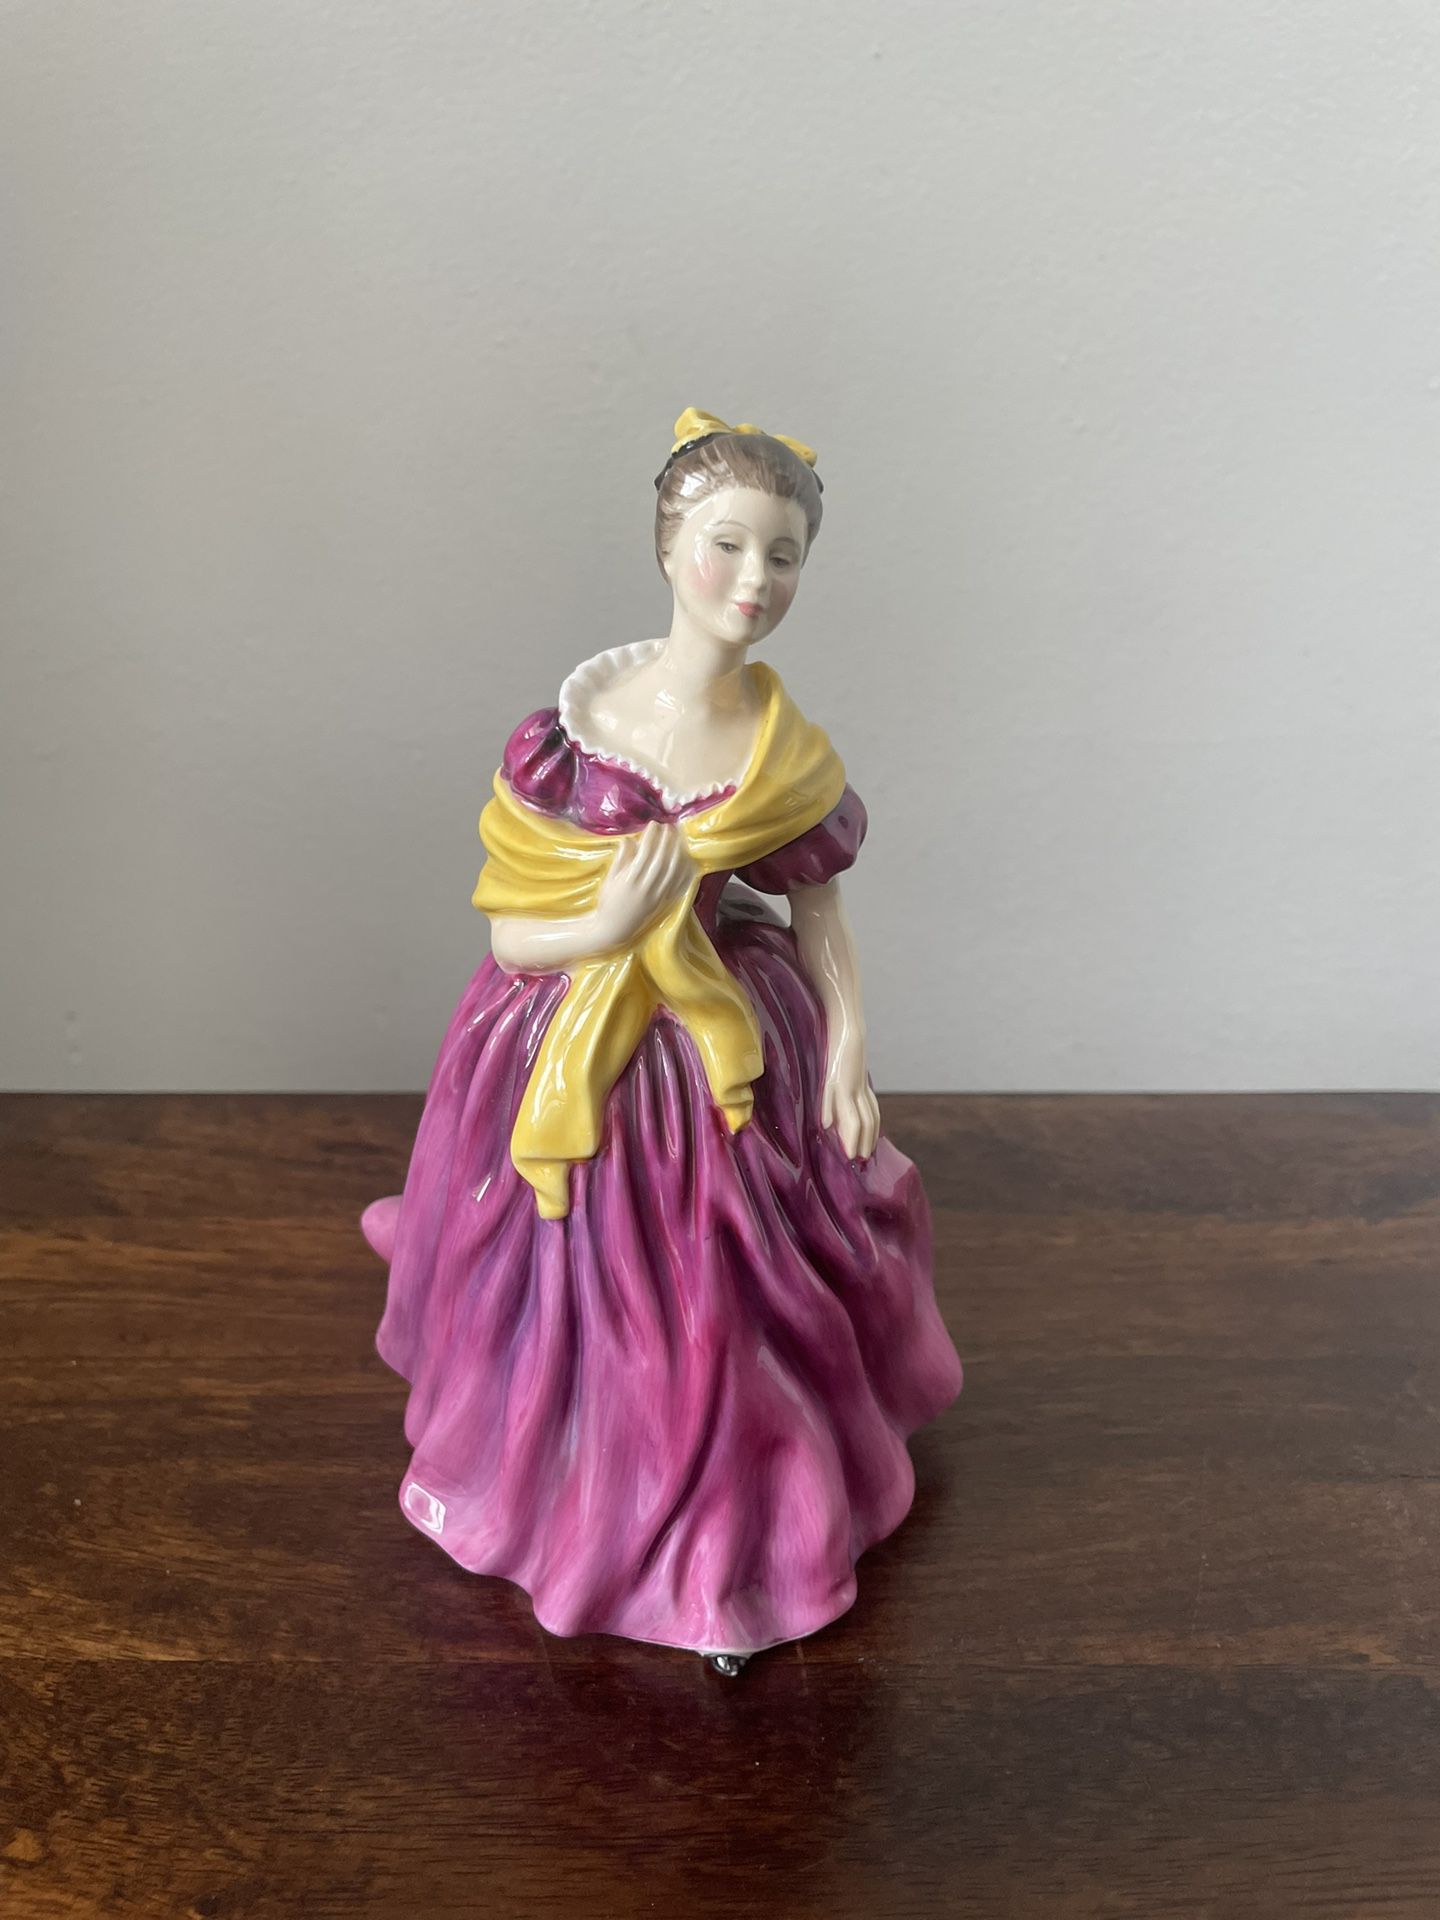 Royal Doulton Porcelain Figurine “Adrienne” 1963